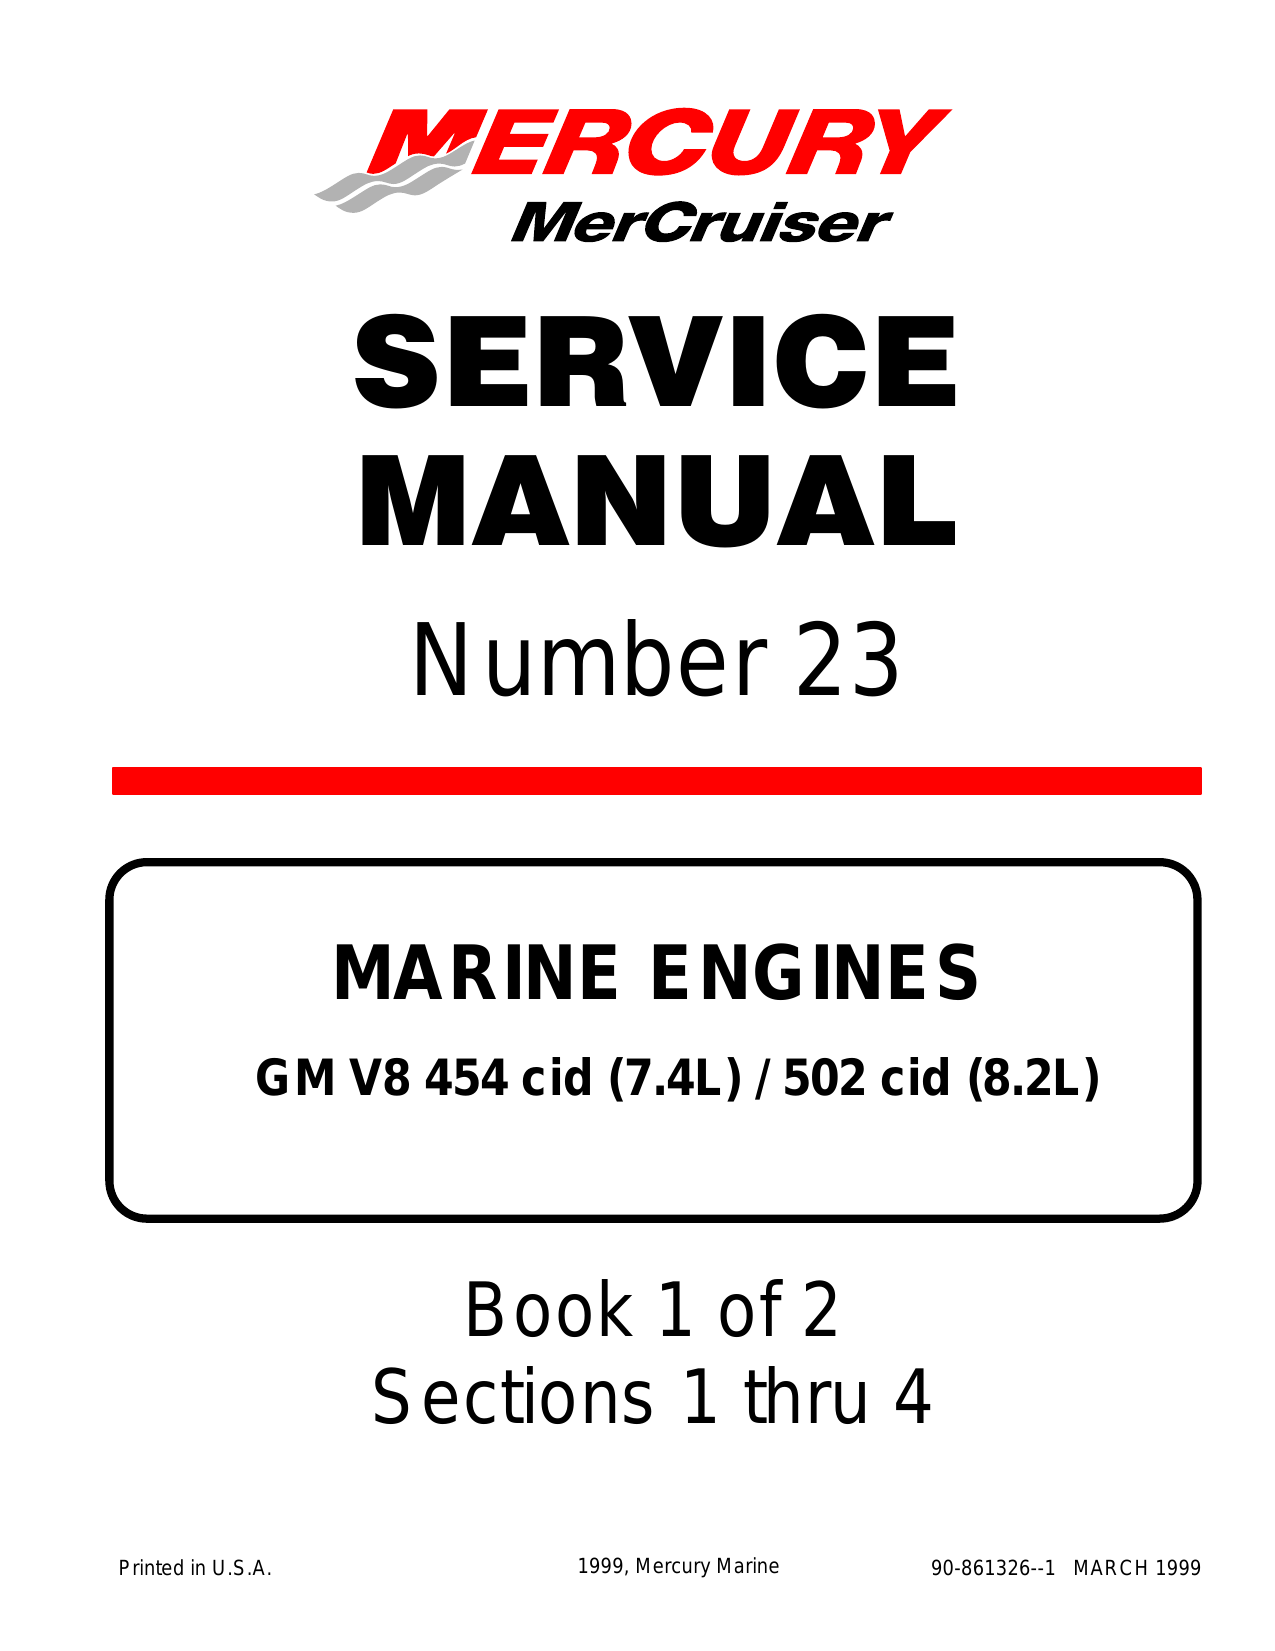 Mercury Mercruiser Marine engine Number 23, GM V-8 454 CID (7.4L)/502 CID (8.2L) service manual Preview image 6